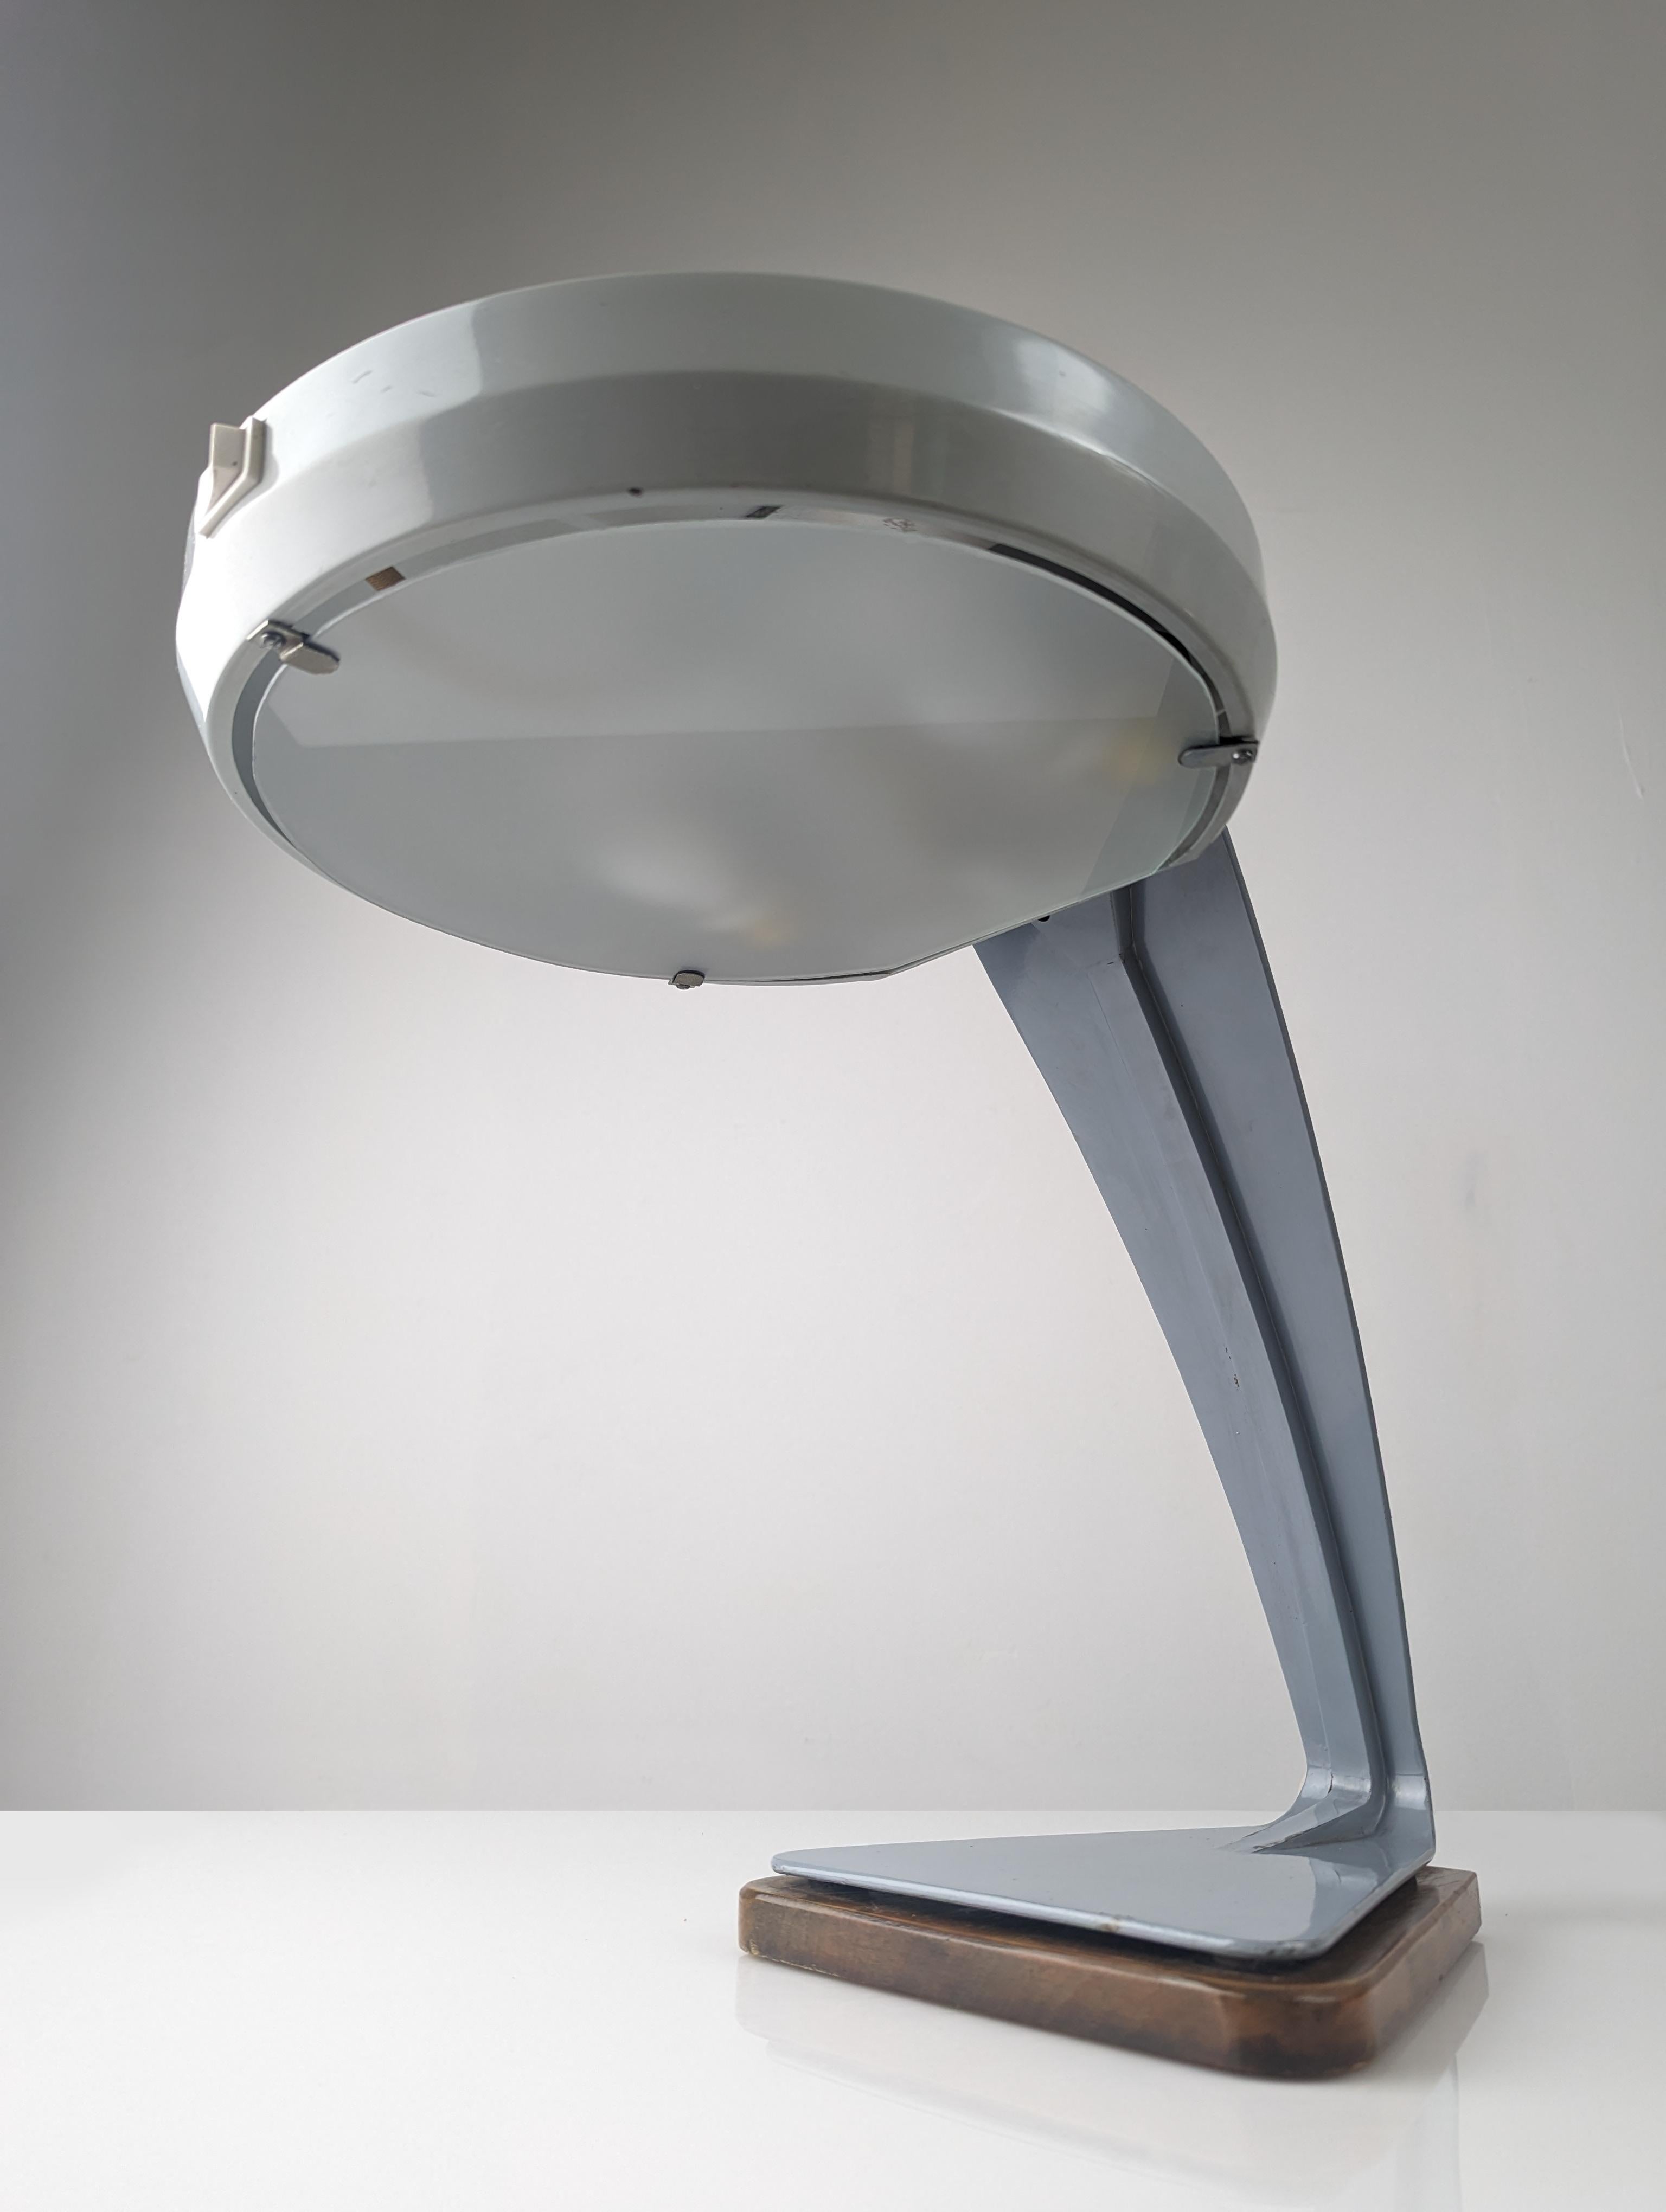 Nous vous présentons une pièce de design authentique, une lampe de bureau qui respire l'élégance et le charme intemporel. Présentant des détails exquis issus d'un travail artisanal méticuleux, il associe la solidité du métal à la chaleur du bois et